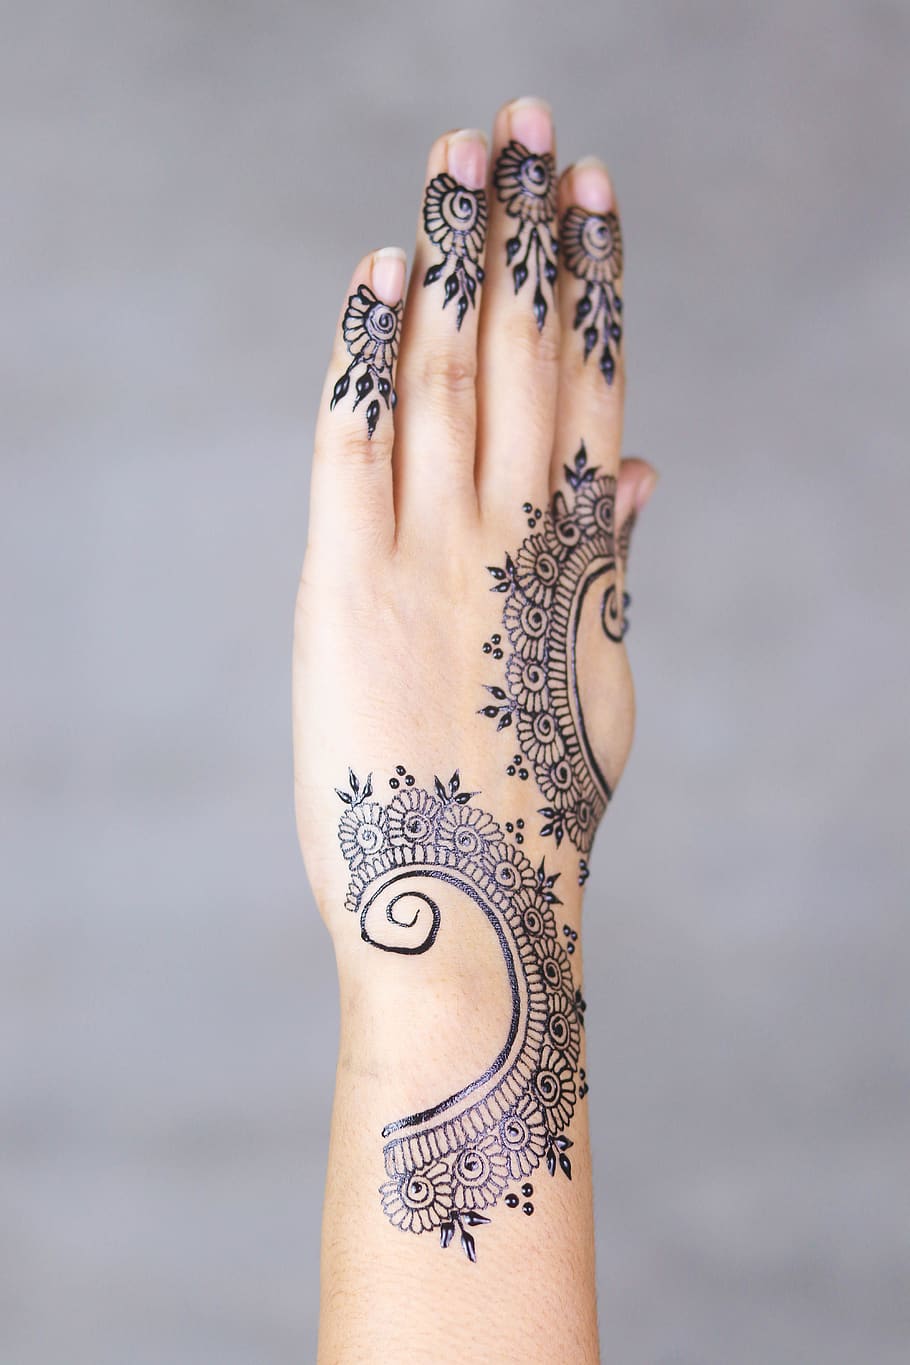 hena, mãos, padrão, feminino, palmas das mãos, projeto, decoração, arte, indiano, étnica